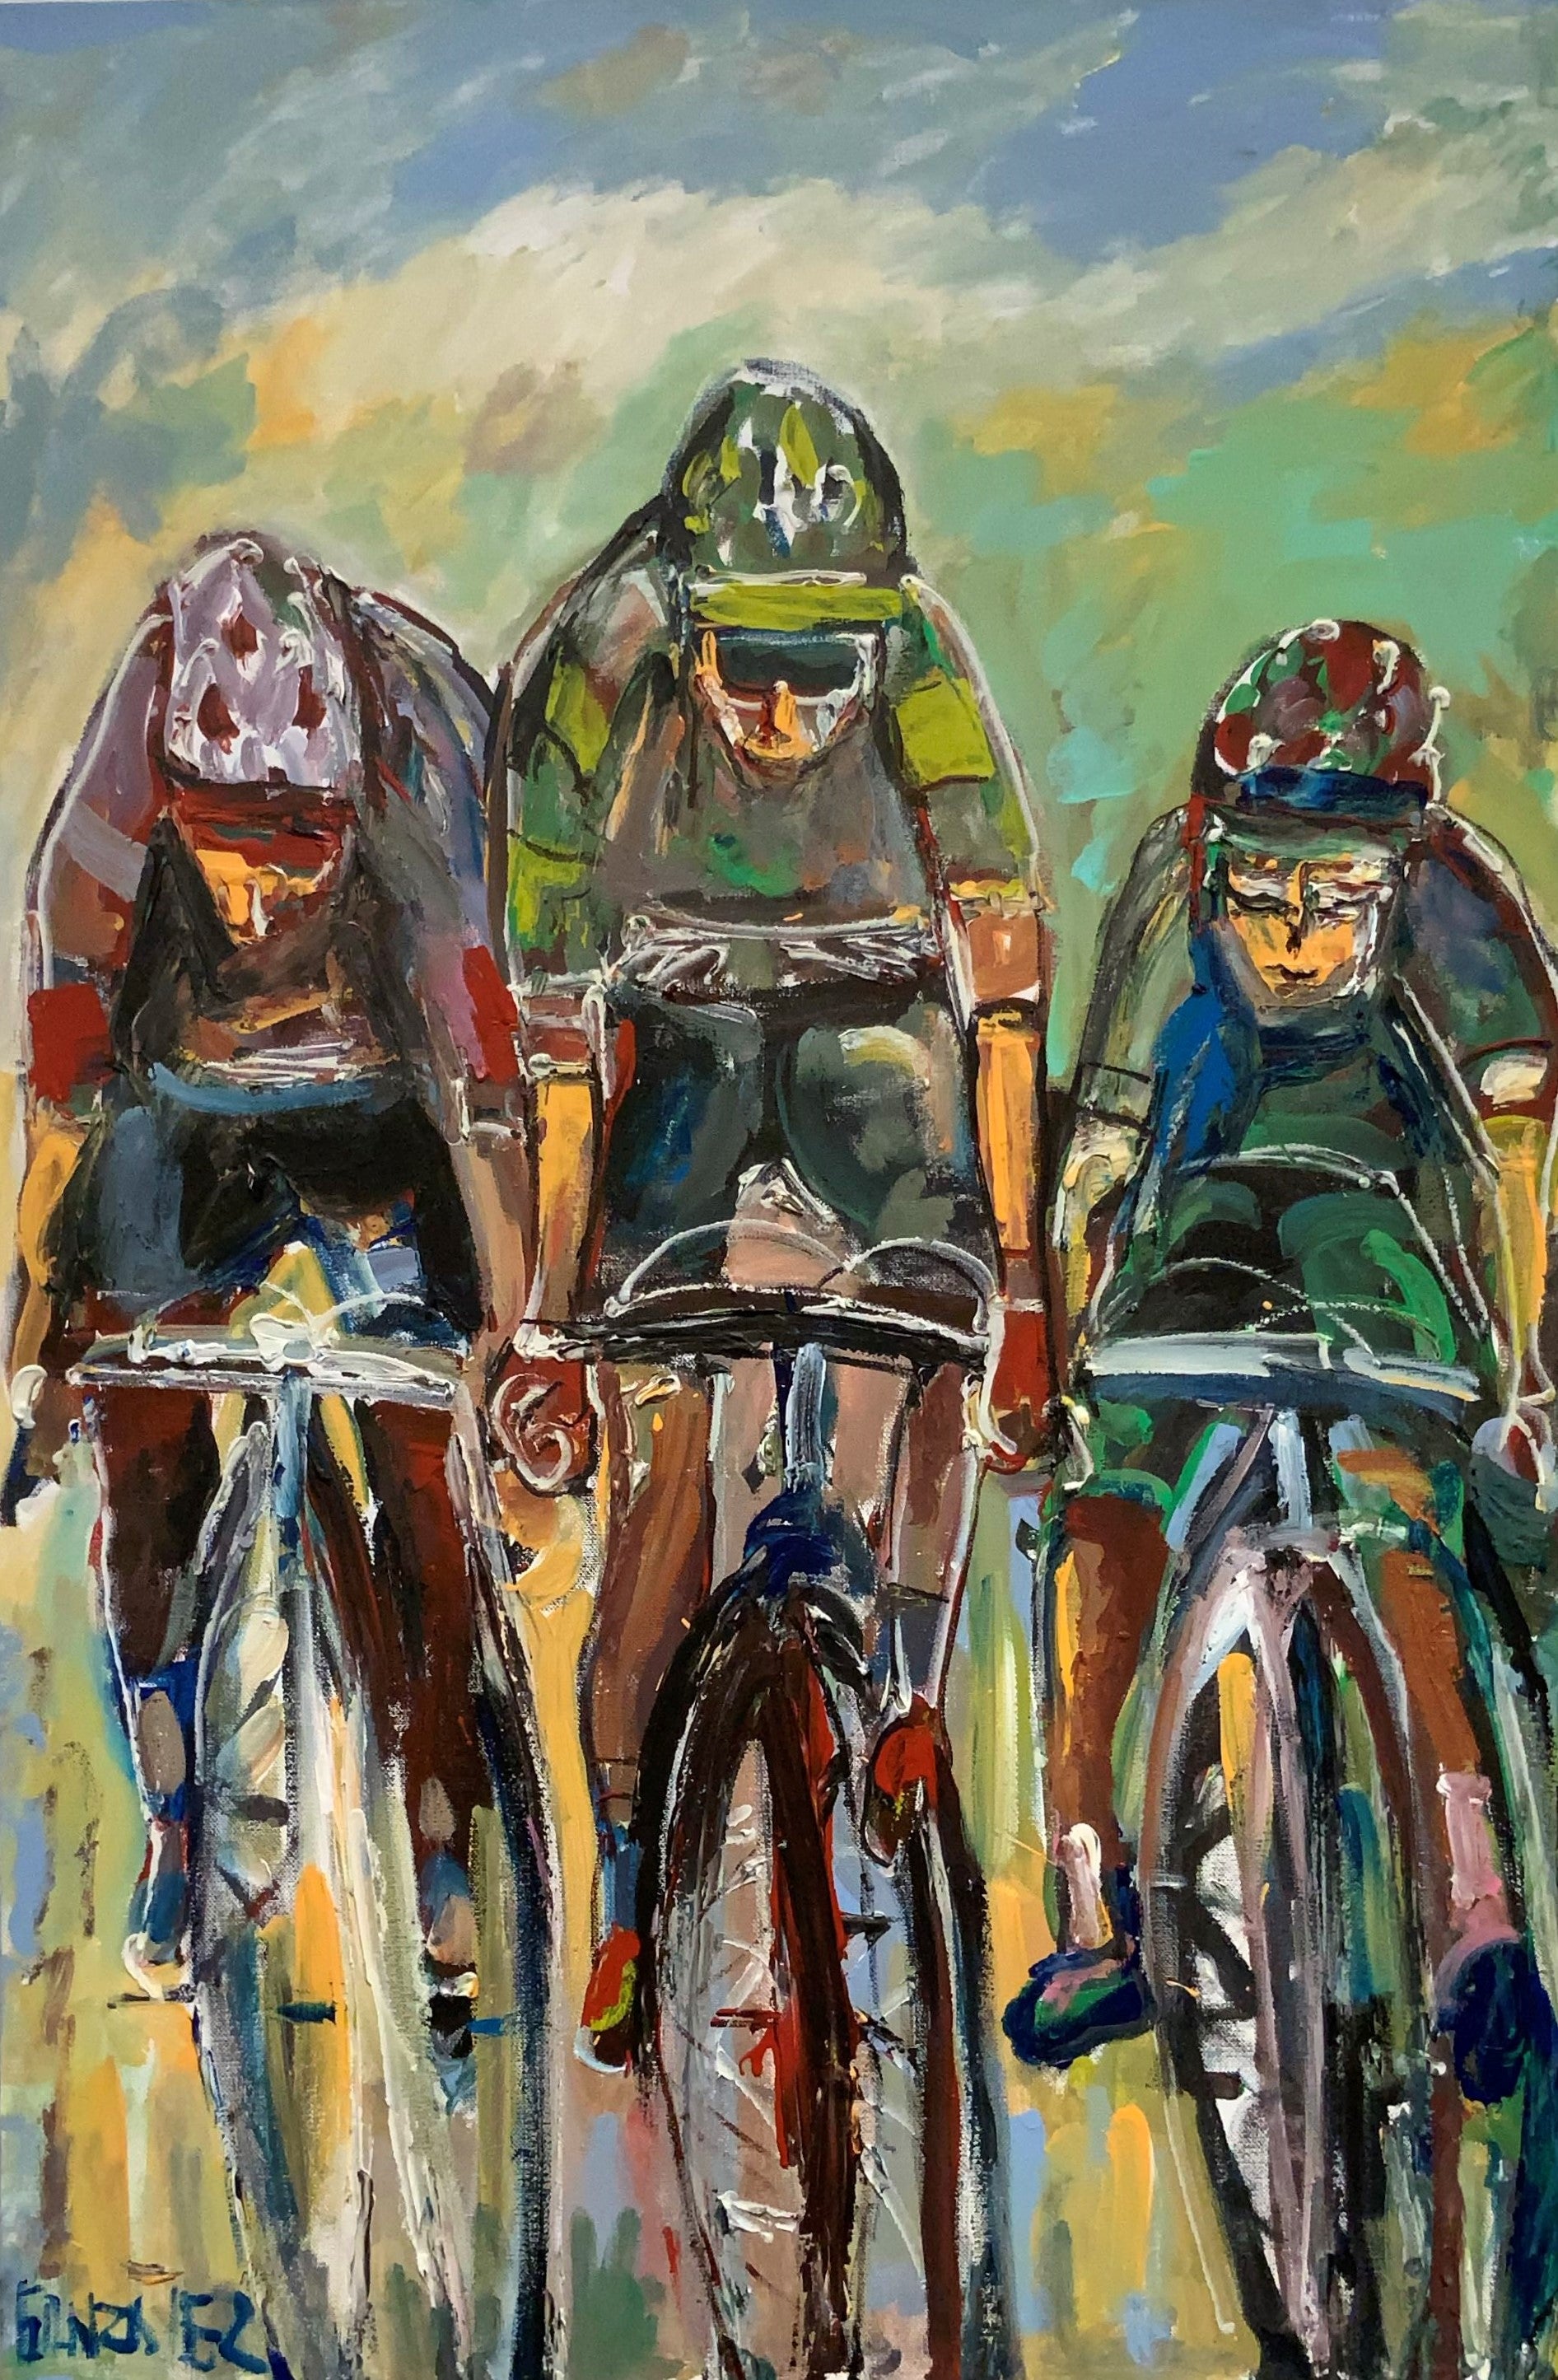 ENRIQUE GONZALEZ, "3 BICYCLISTS"